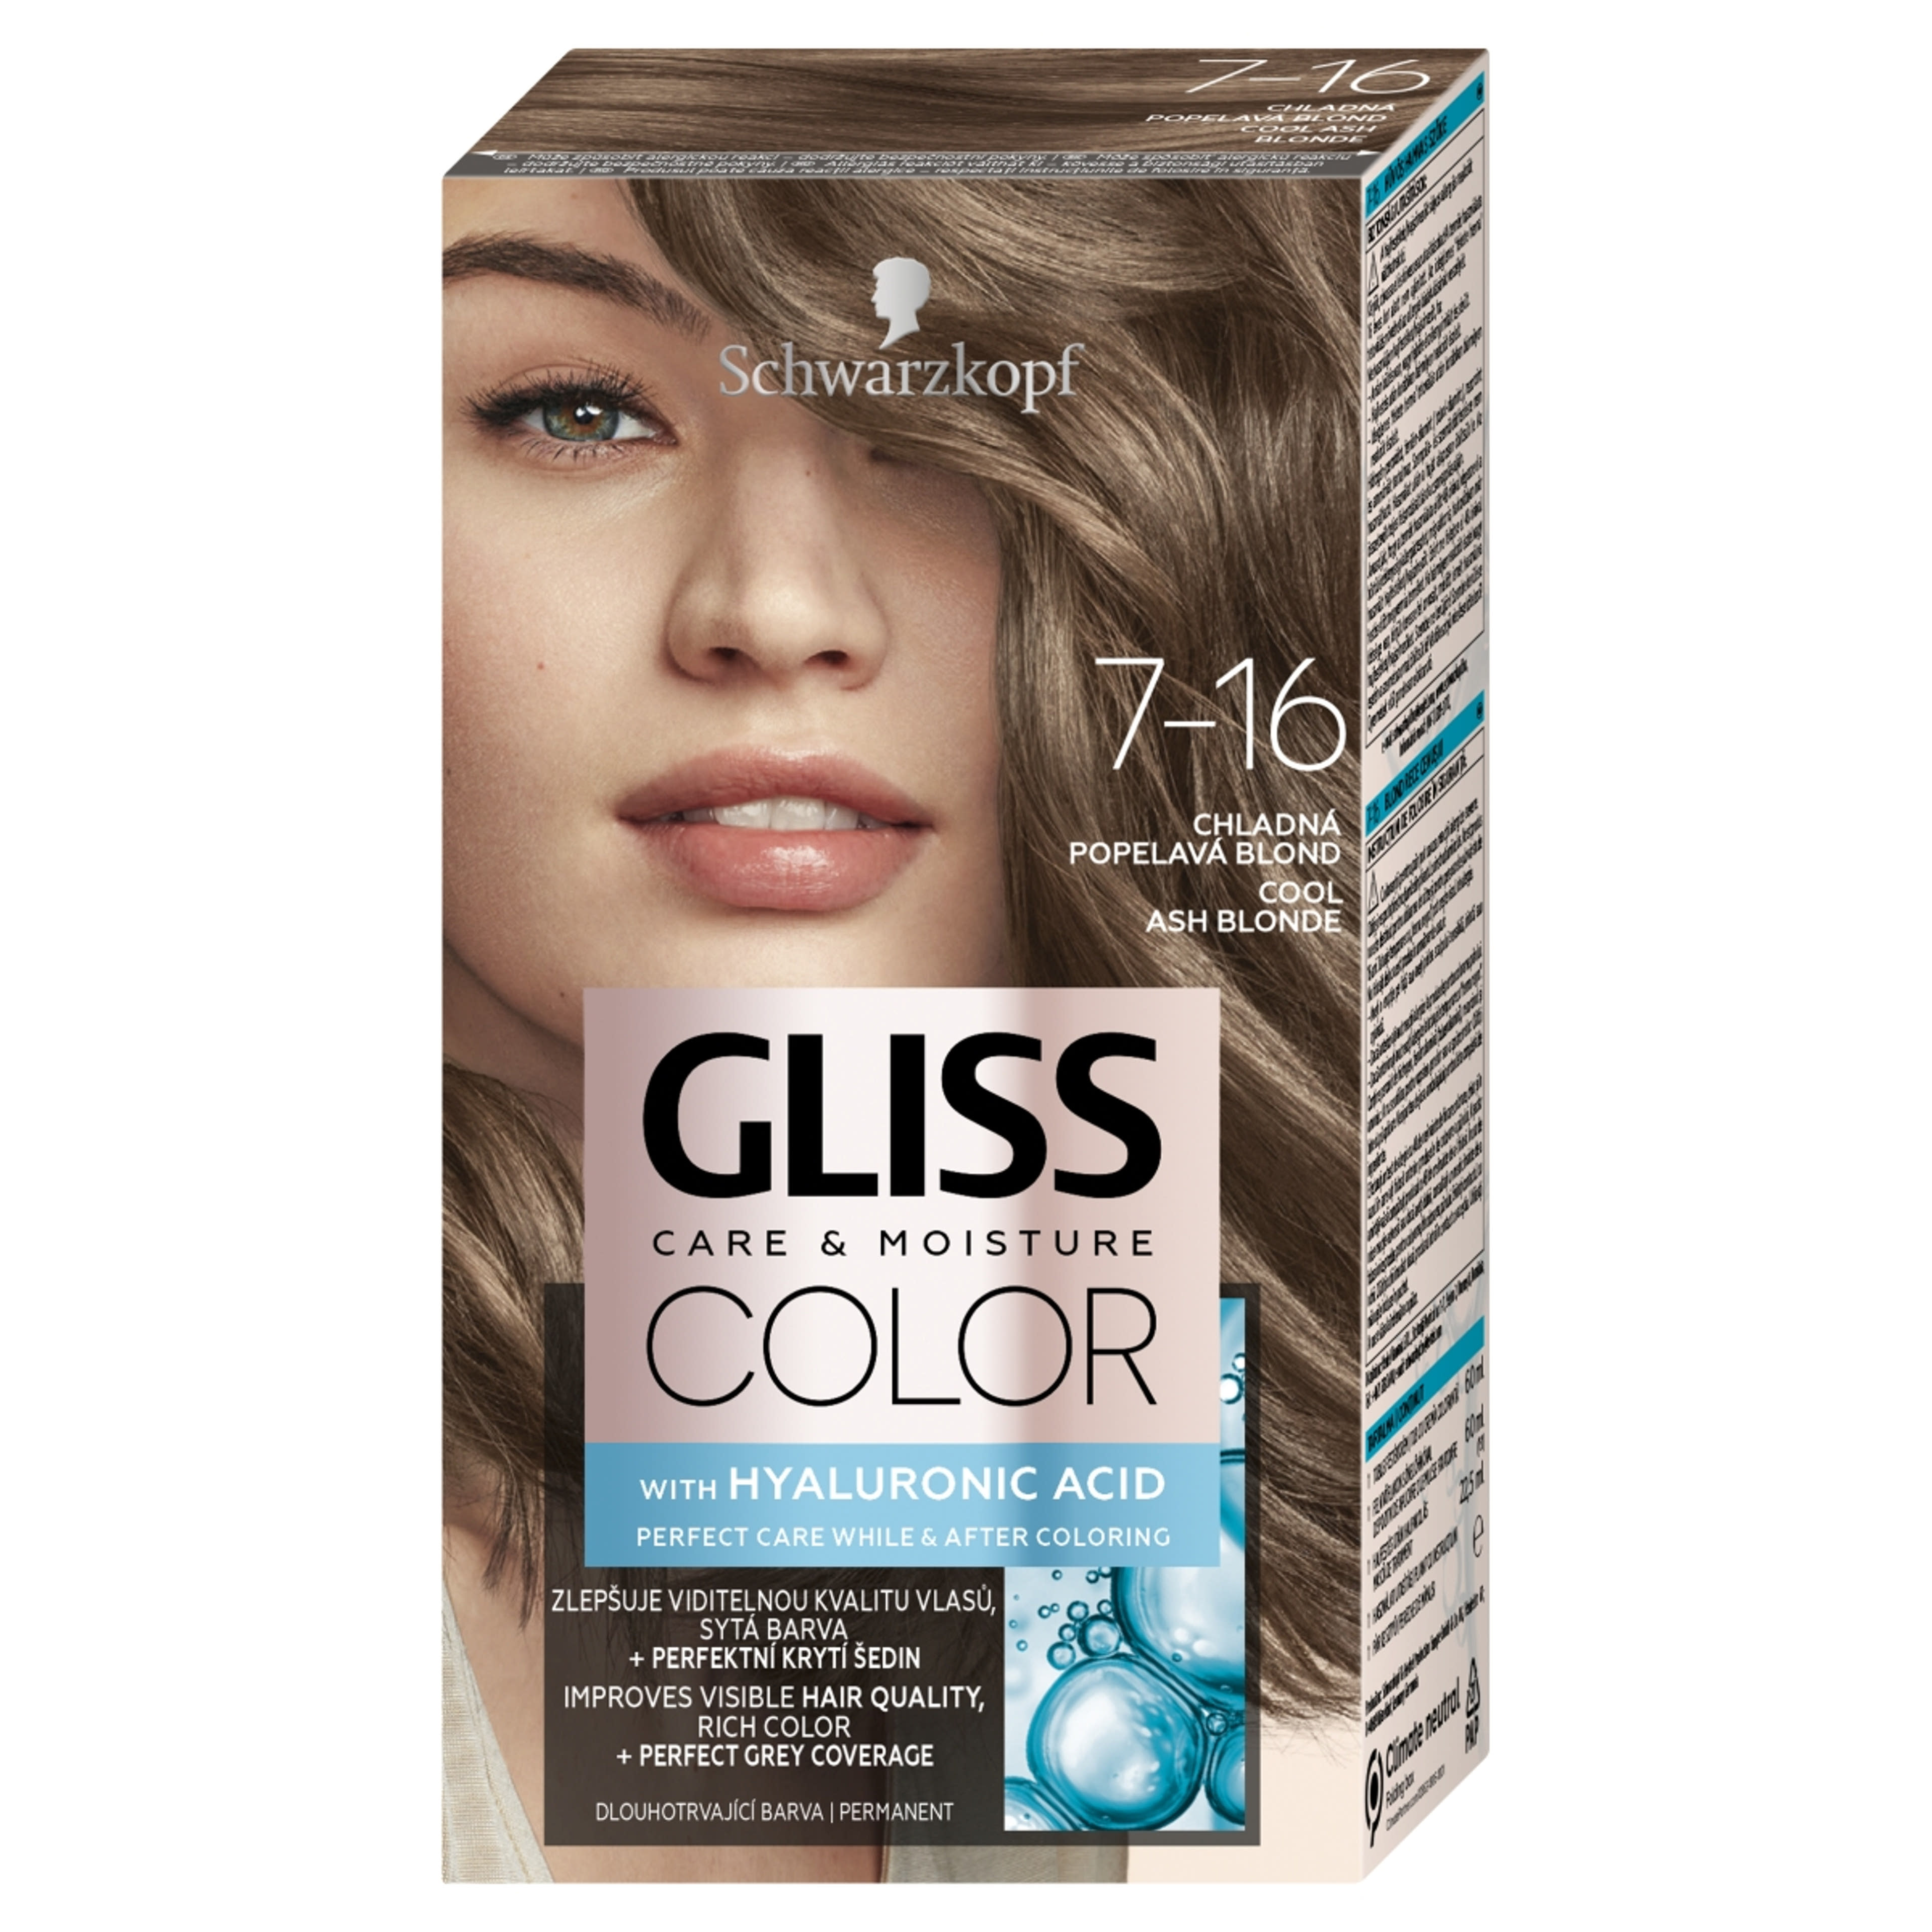 Schwarzkopf Gliss Color tartós hajfesték 7-16 hűvös hamvas szőke - 1 db